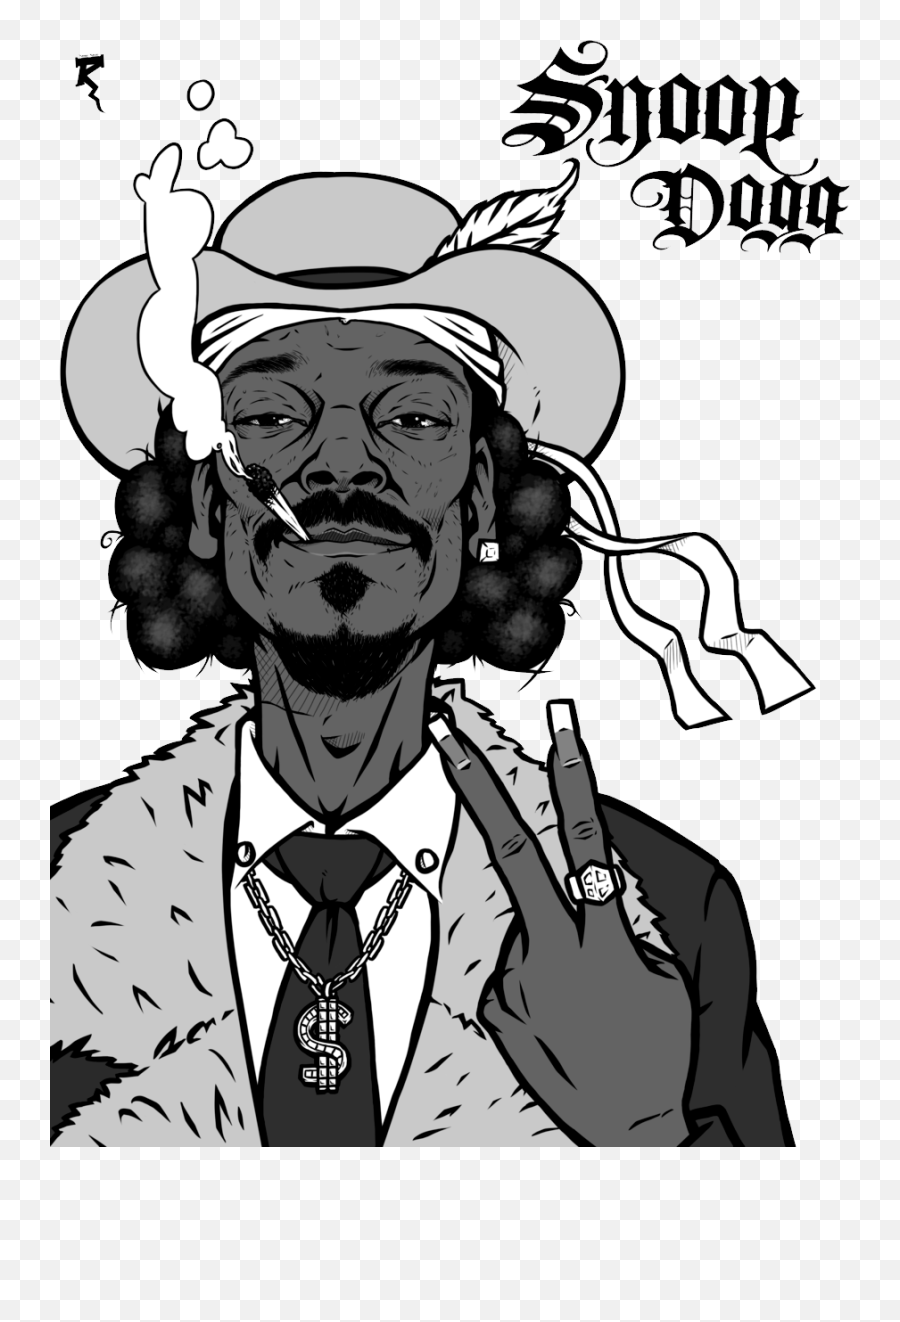 Wheelchair Png Images - Snoop Dogg Smoking Cartoon,Snoop Dogg Png